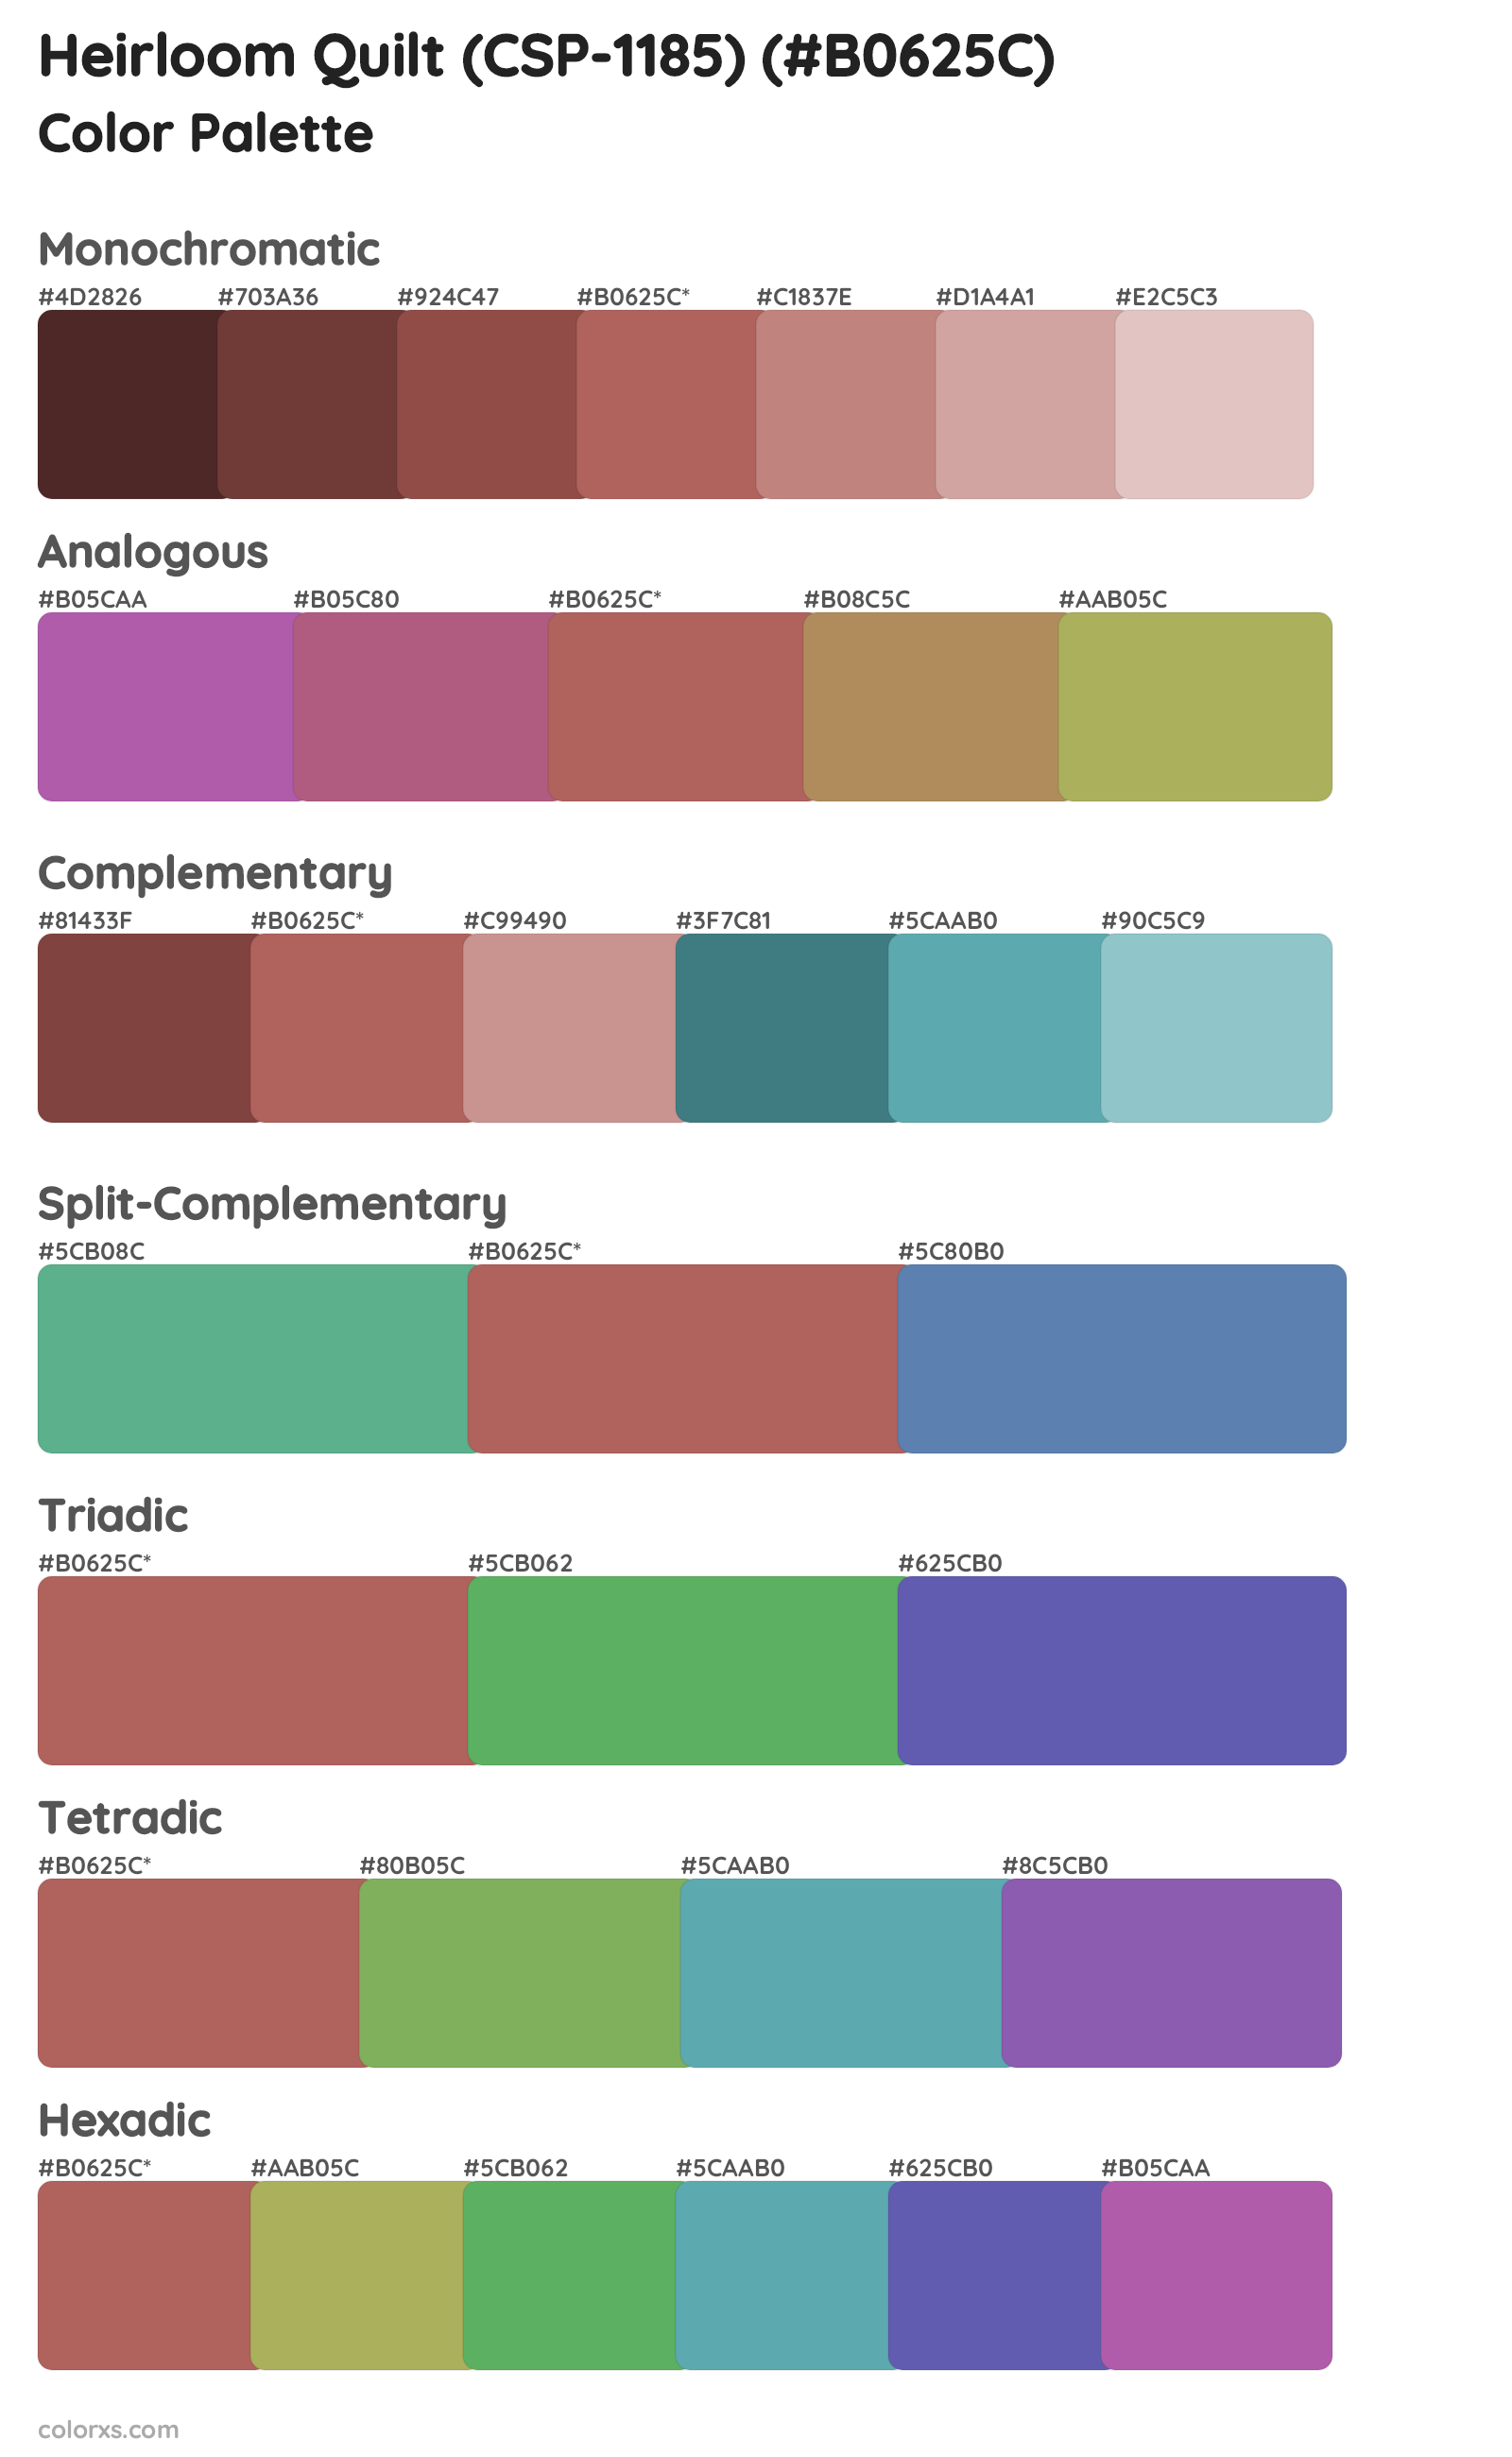 Heirloom Quilt (CSP-1185) Color Scheme Palettes